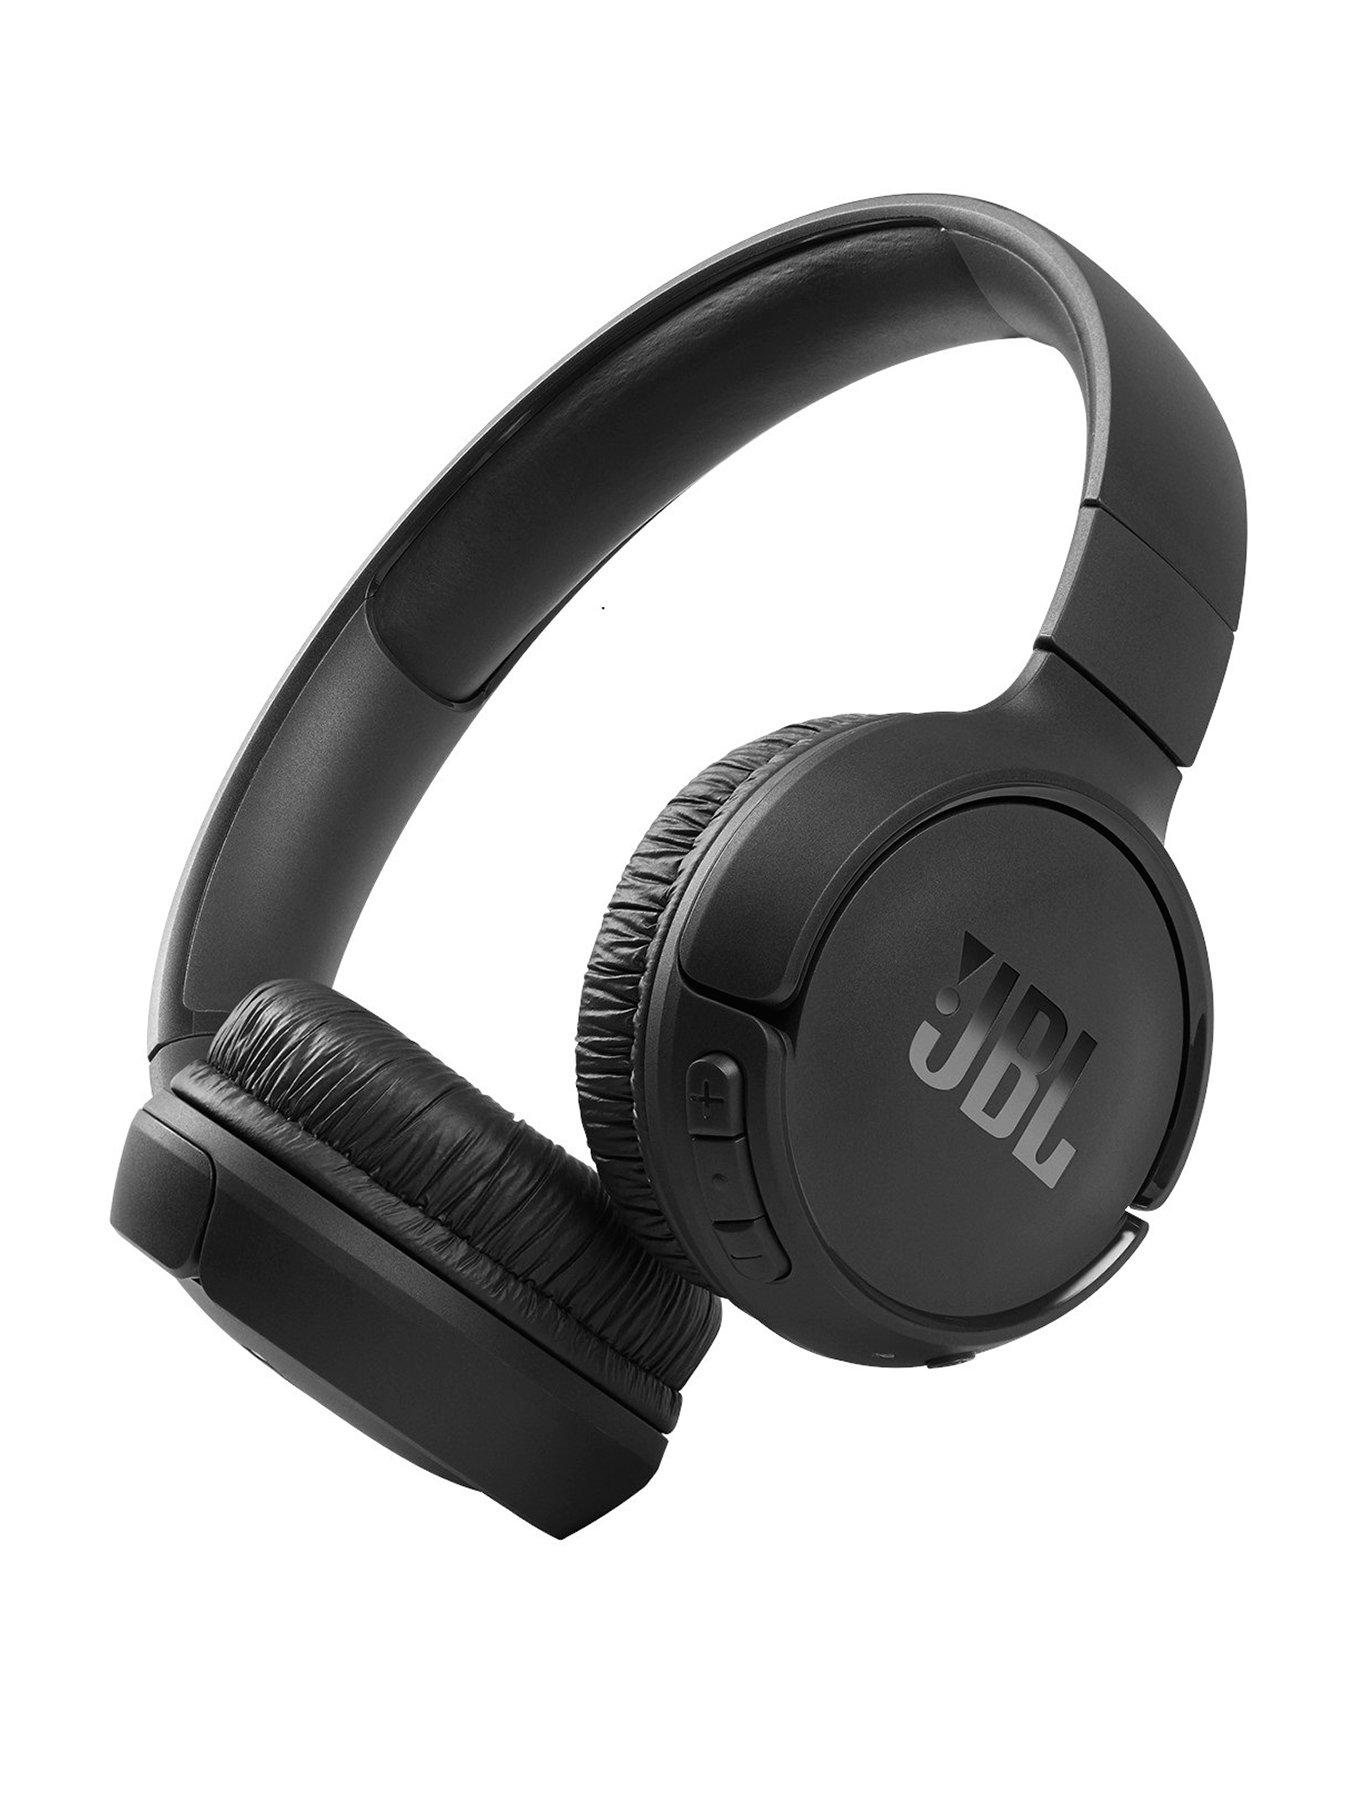 Jbl | Headphones | Ireland Electricals Very 